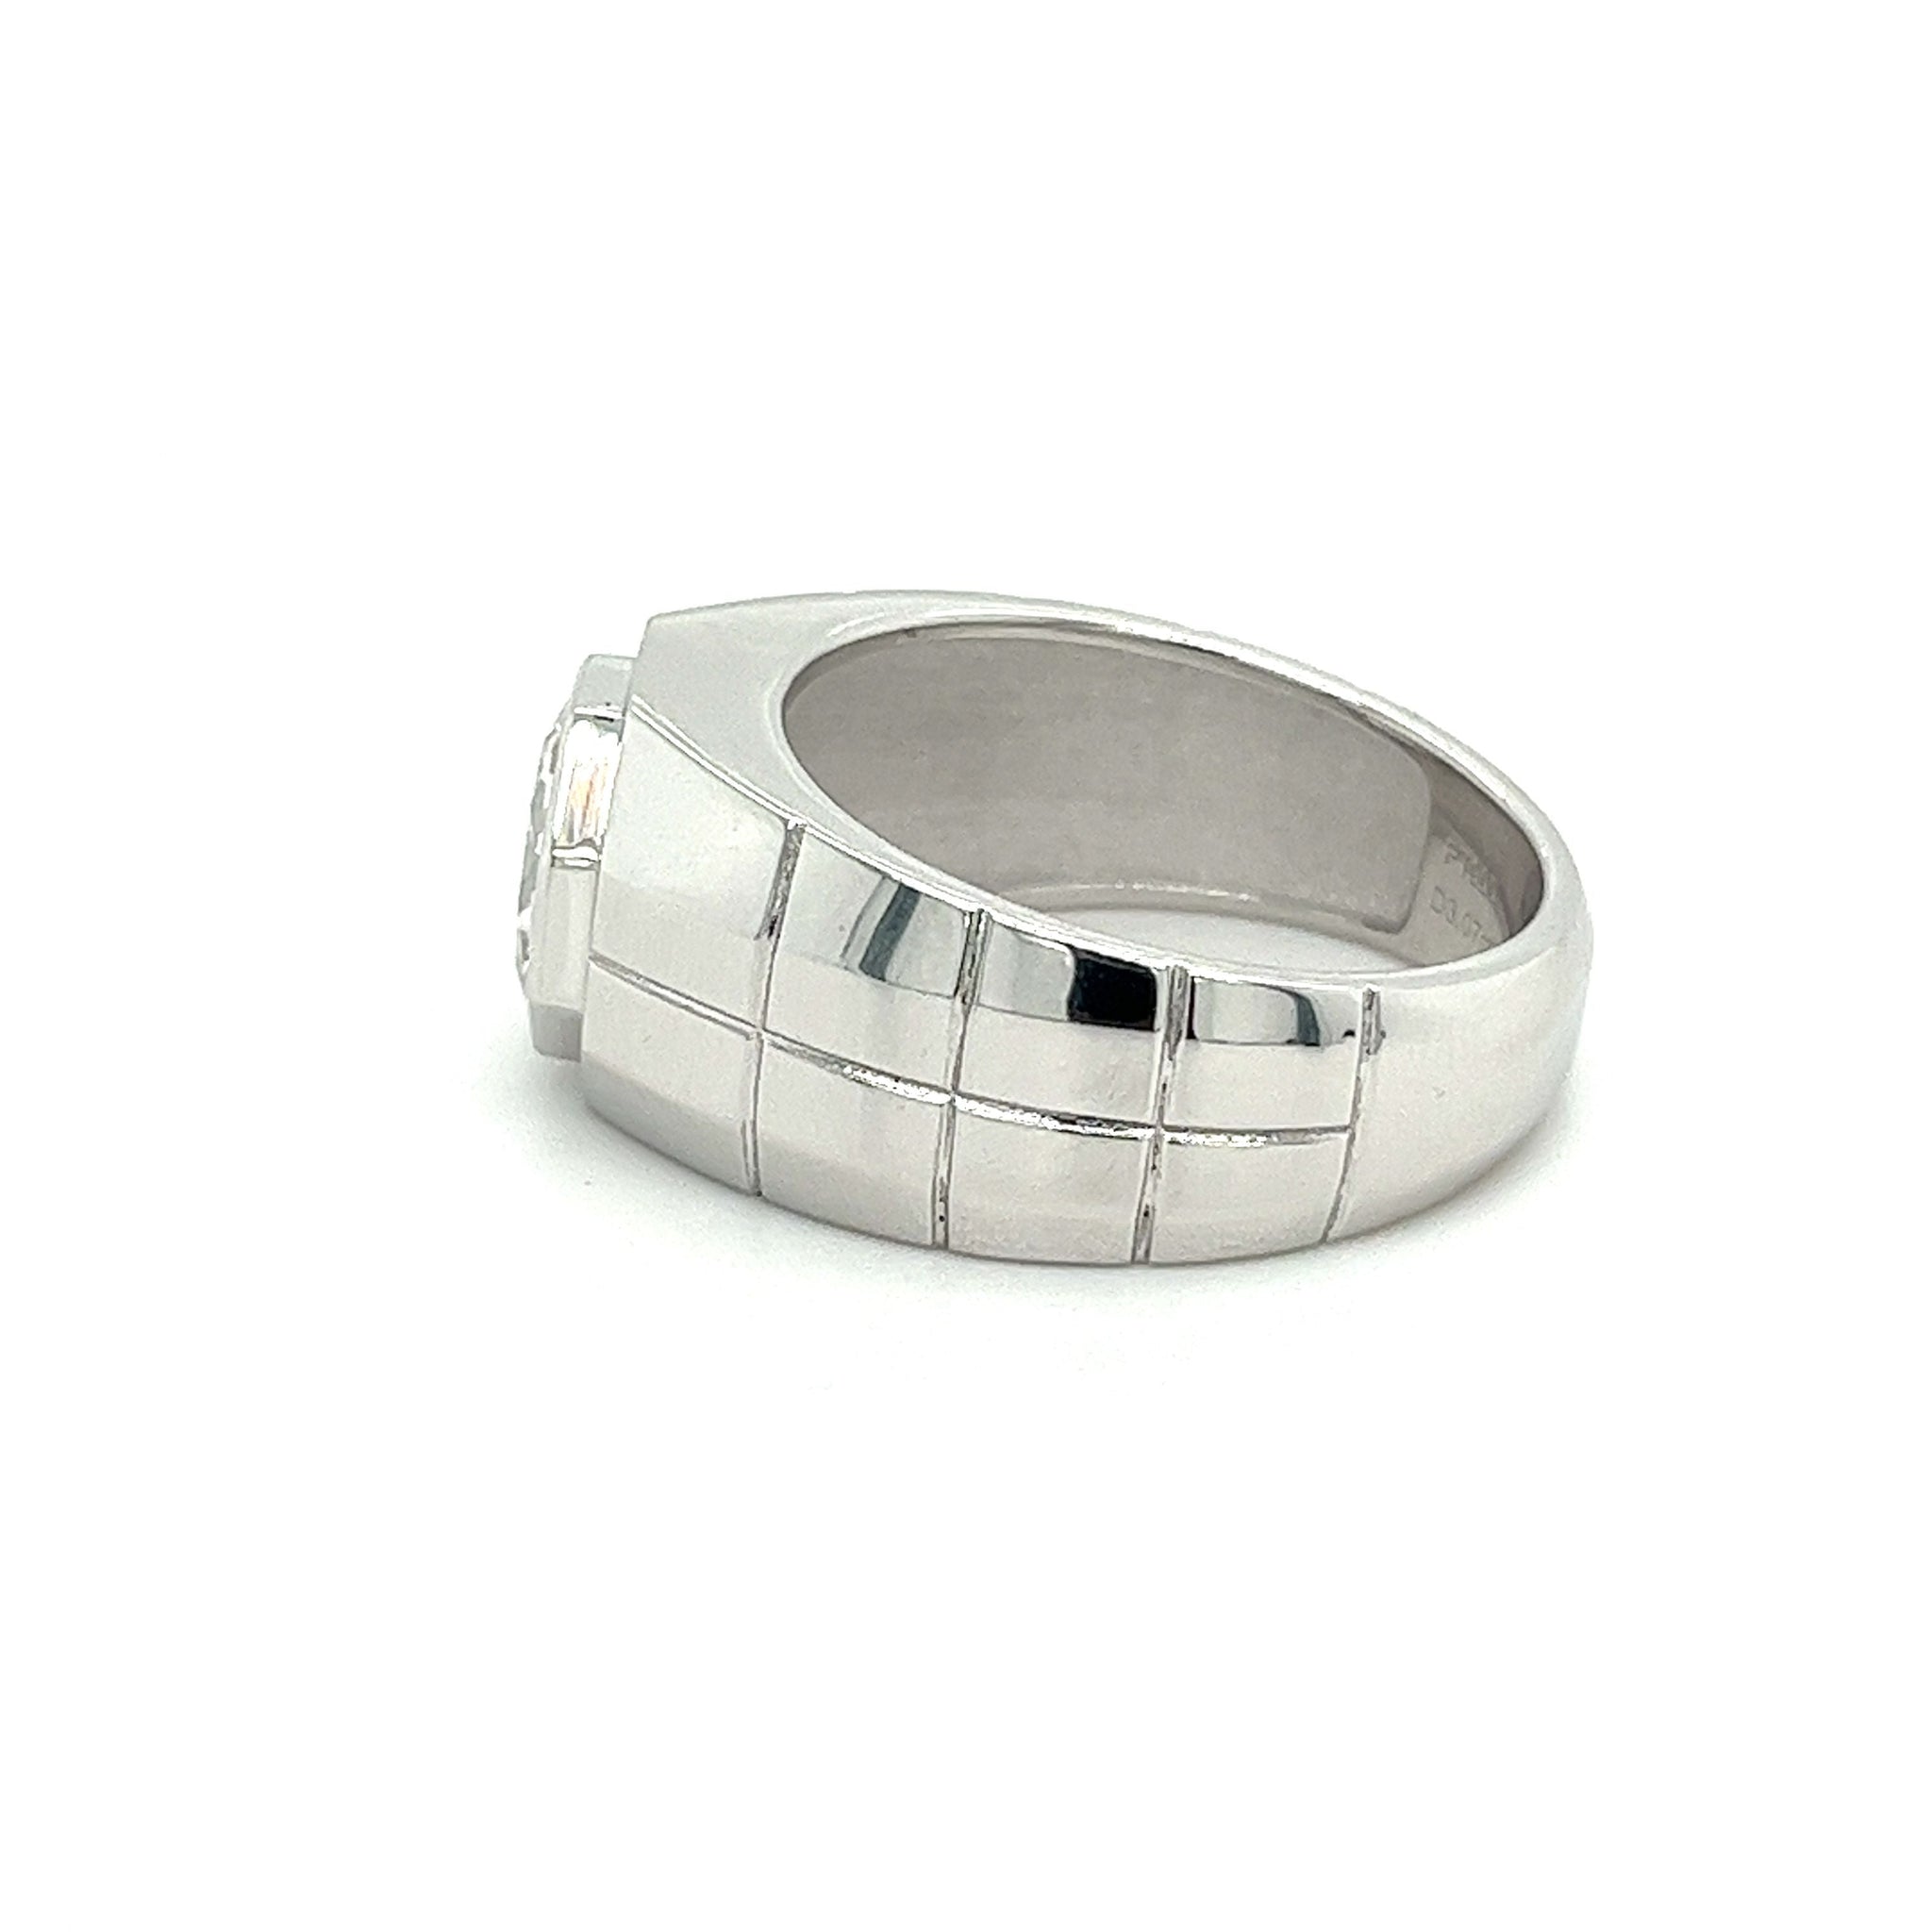 Men's 3 Carat Octagon CVD Diamond Ring